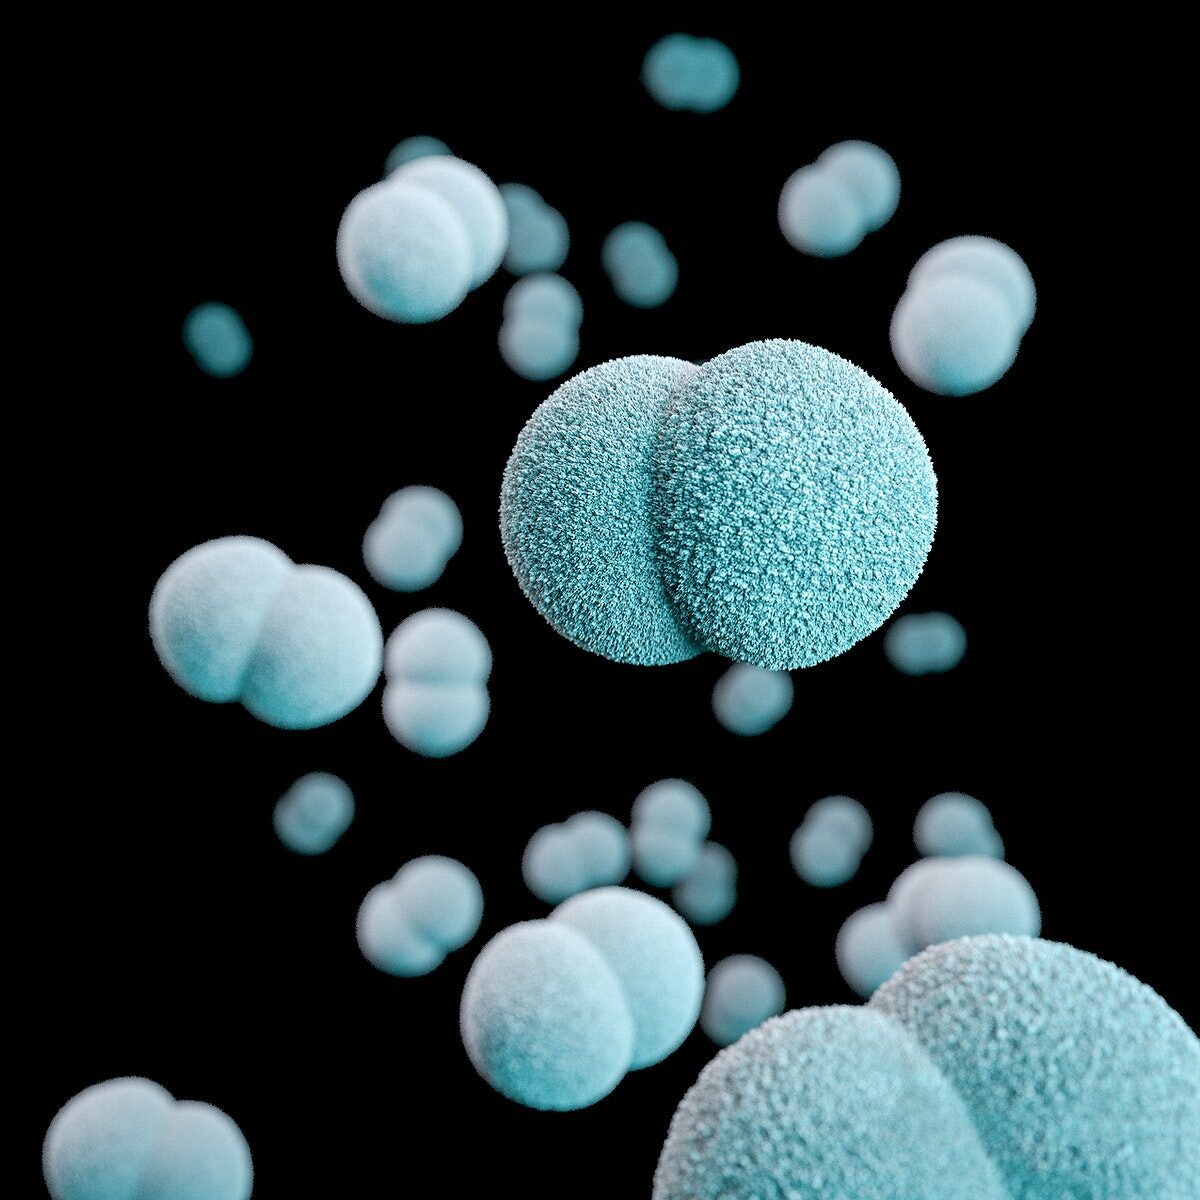 Imagem 3d de um grupo de diplococos gram-negativos de neisseria meningitides